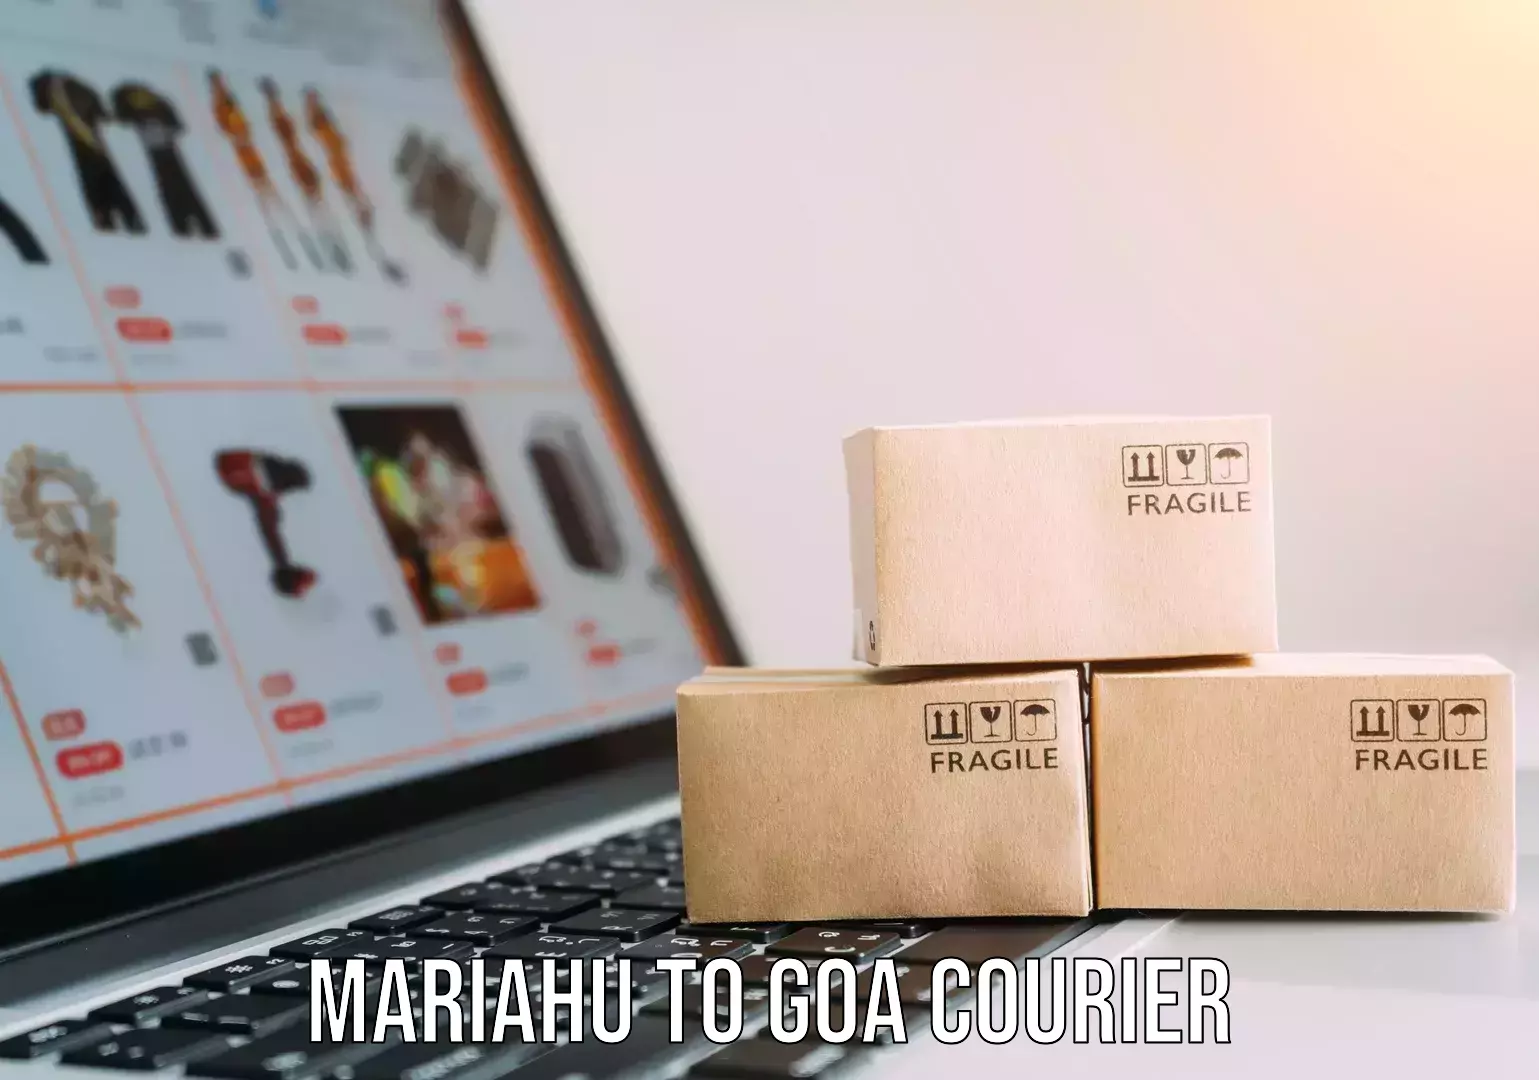 Expert moving and storage Mariahu to Goa